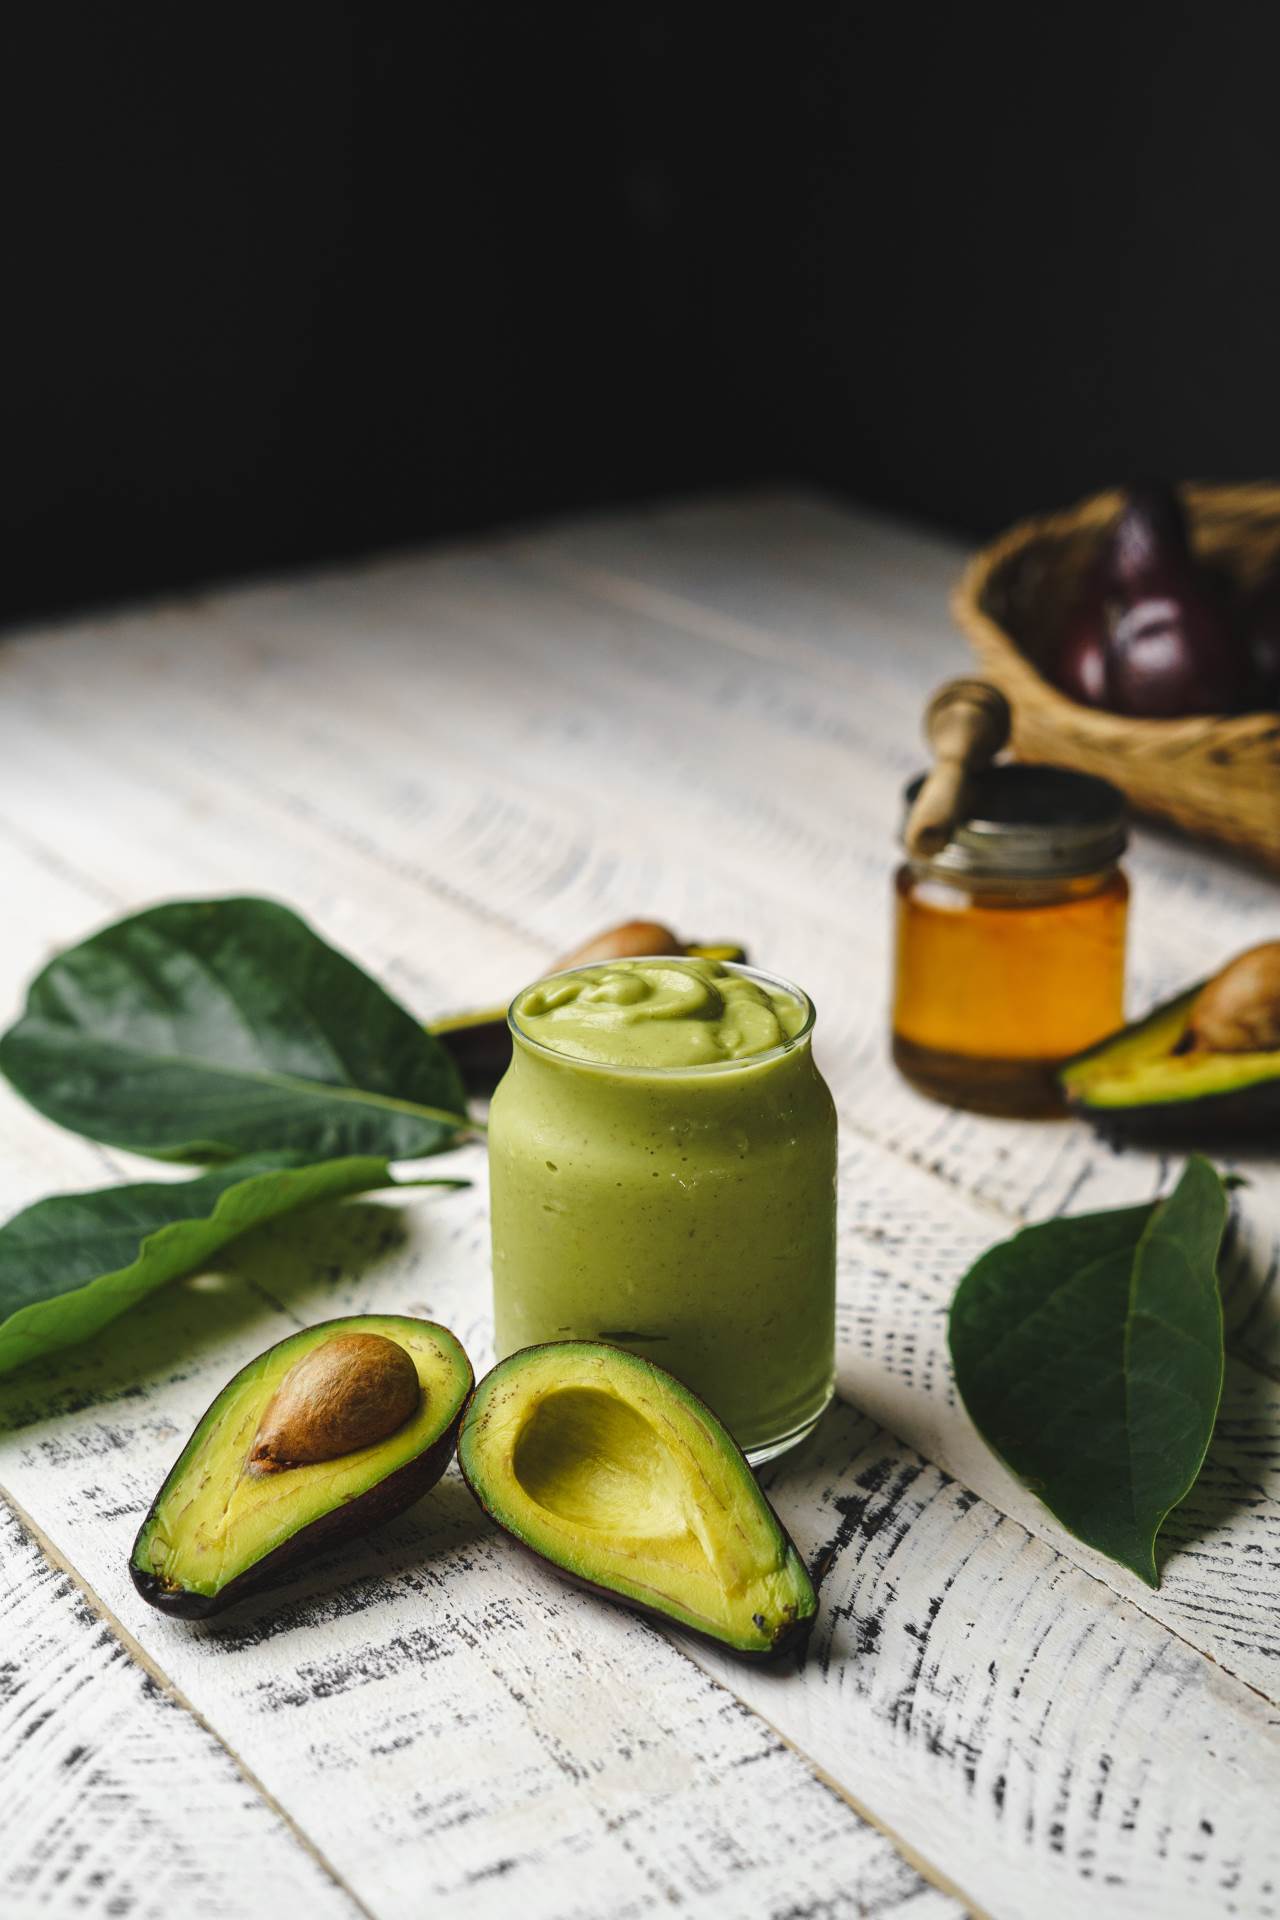 Stručnjaci avokado smatraju vrhunskom namirnicom za zdravlje mozga zbog visokog udjela omega-3 kiselina i vitamina E